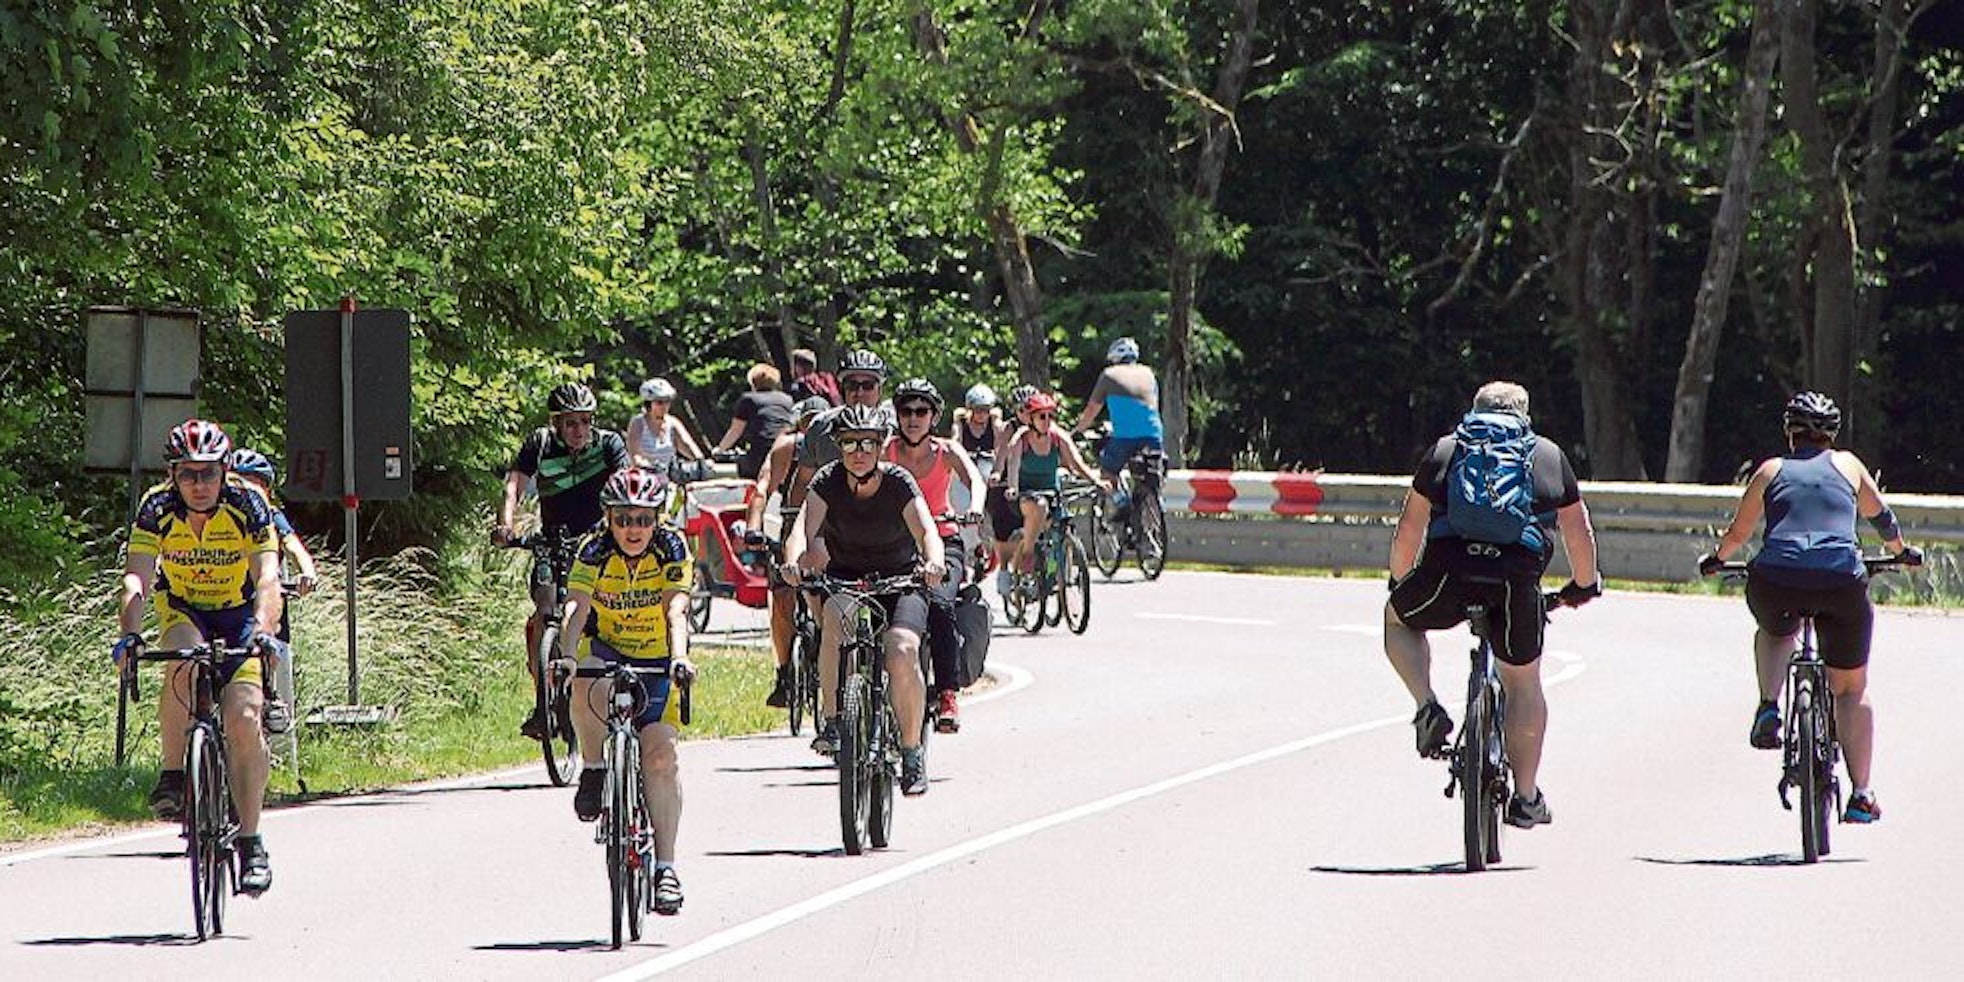 Tausende Radfahrer und Radfahrerinnen bevölkerten die B 258 zwischen Blankenheim und Antweiler beim autofreien Sonntag zur Tour de Ahrtal.